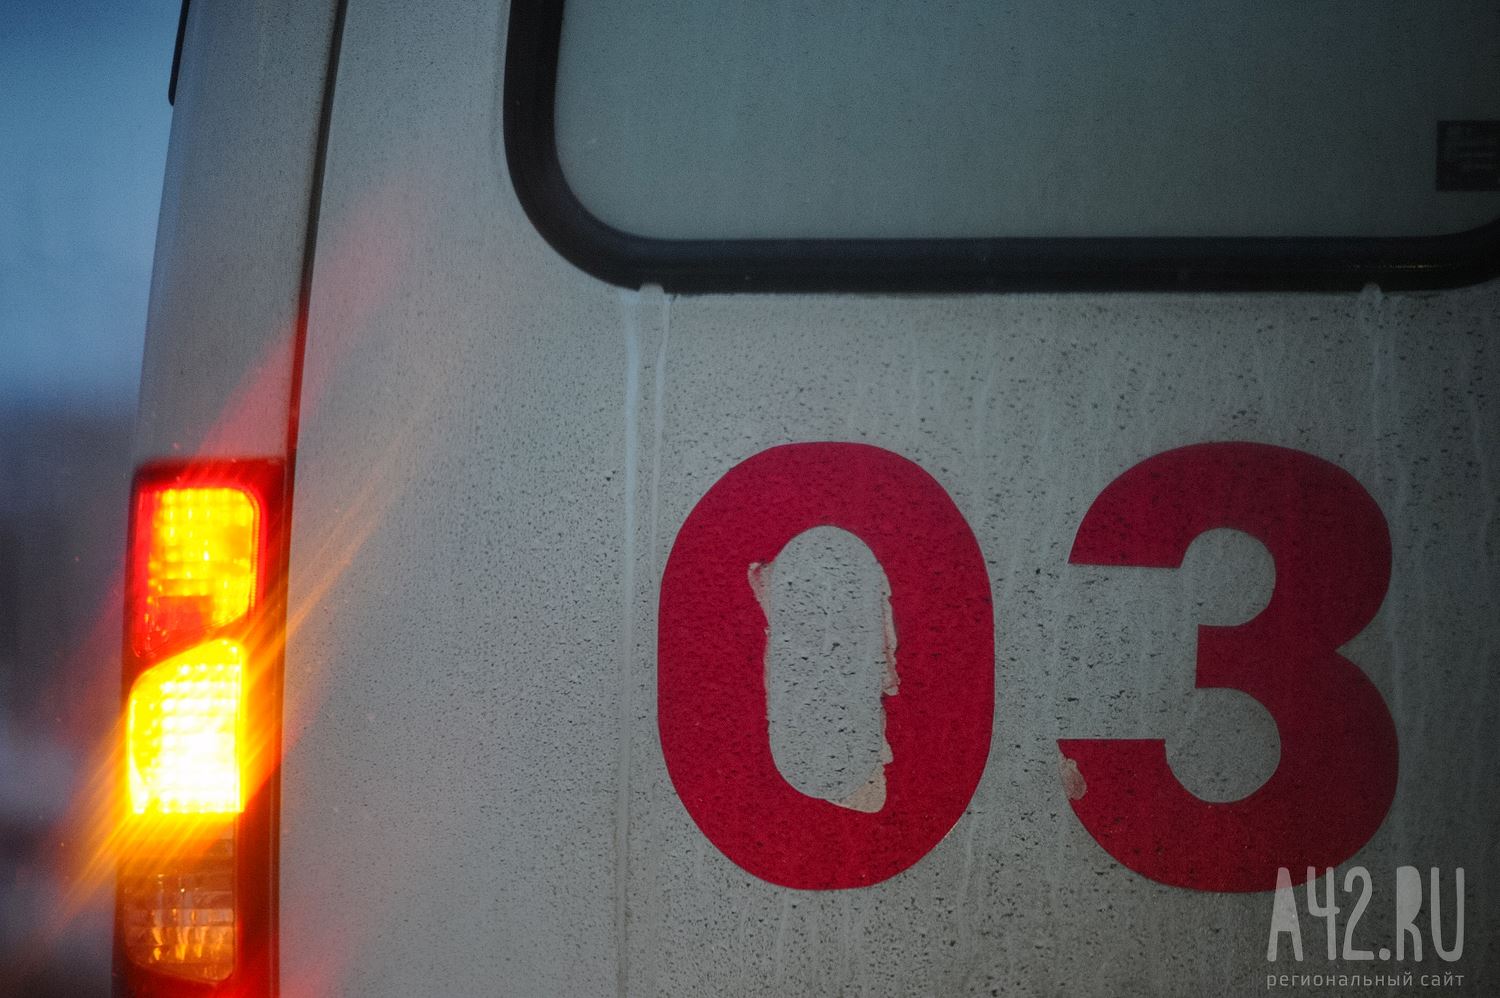 «Весь перед машины был помят»: очевидцы сообщили о смертельном ДТП с пешеходом в Новокузнецке